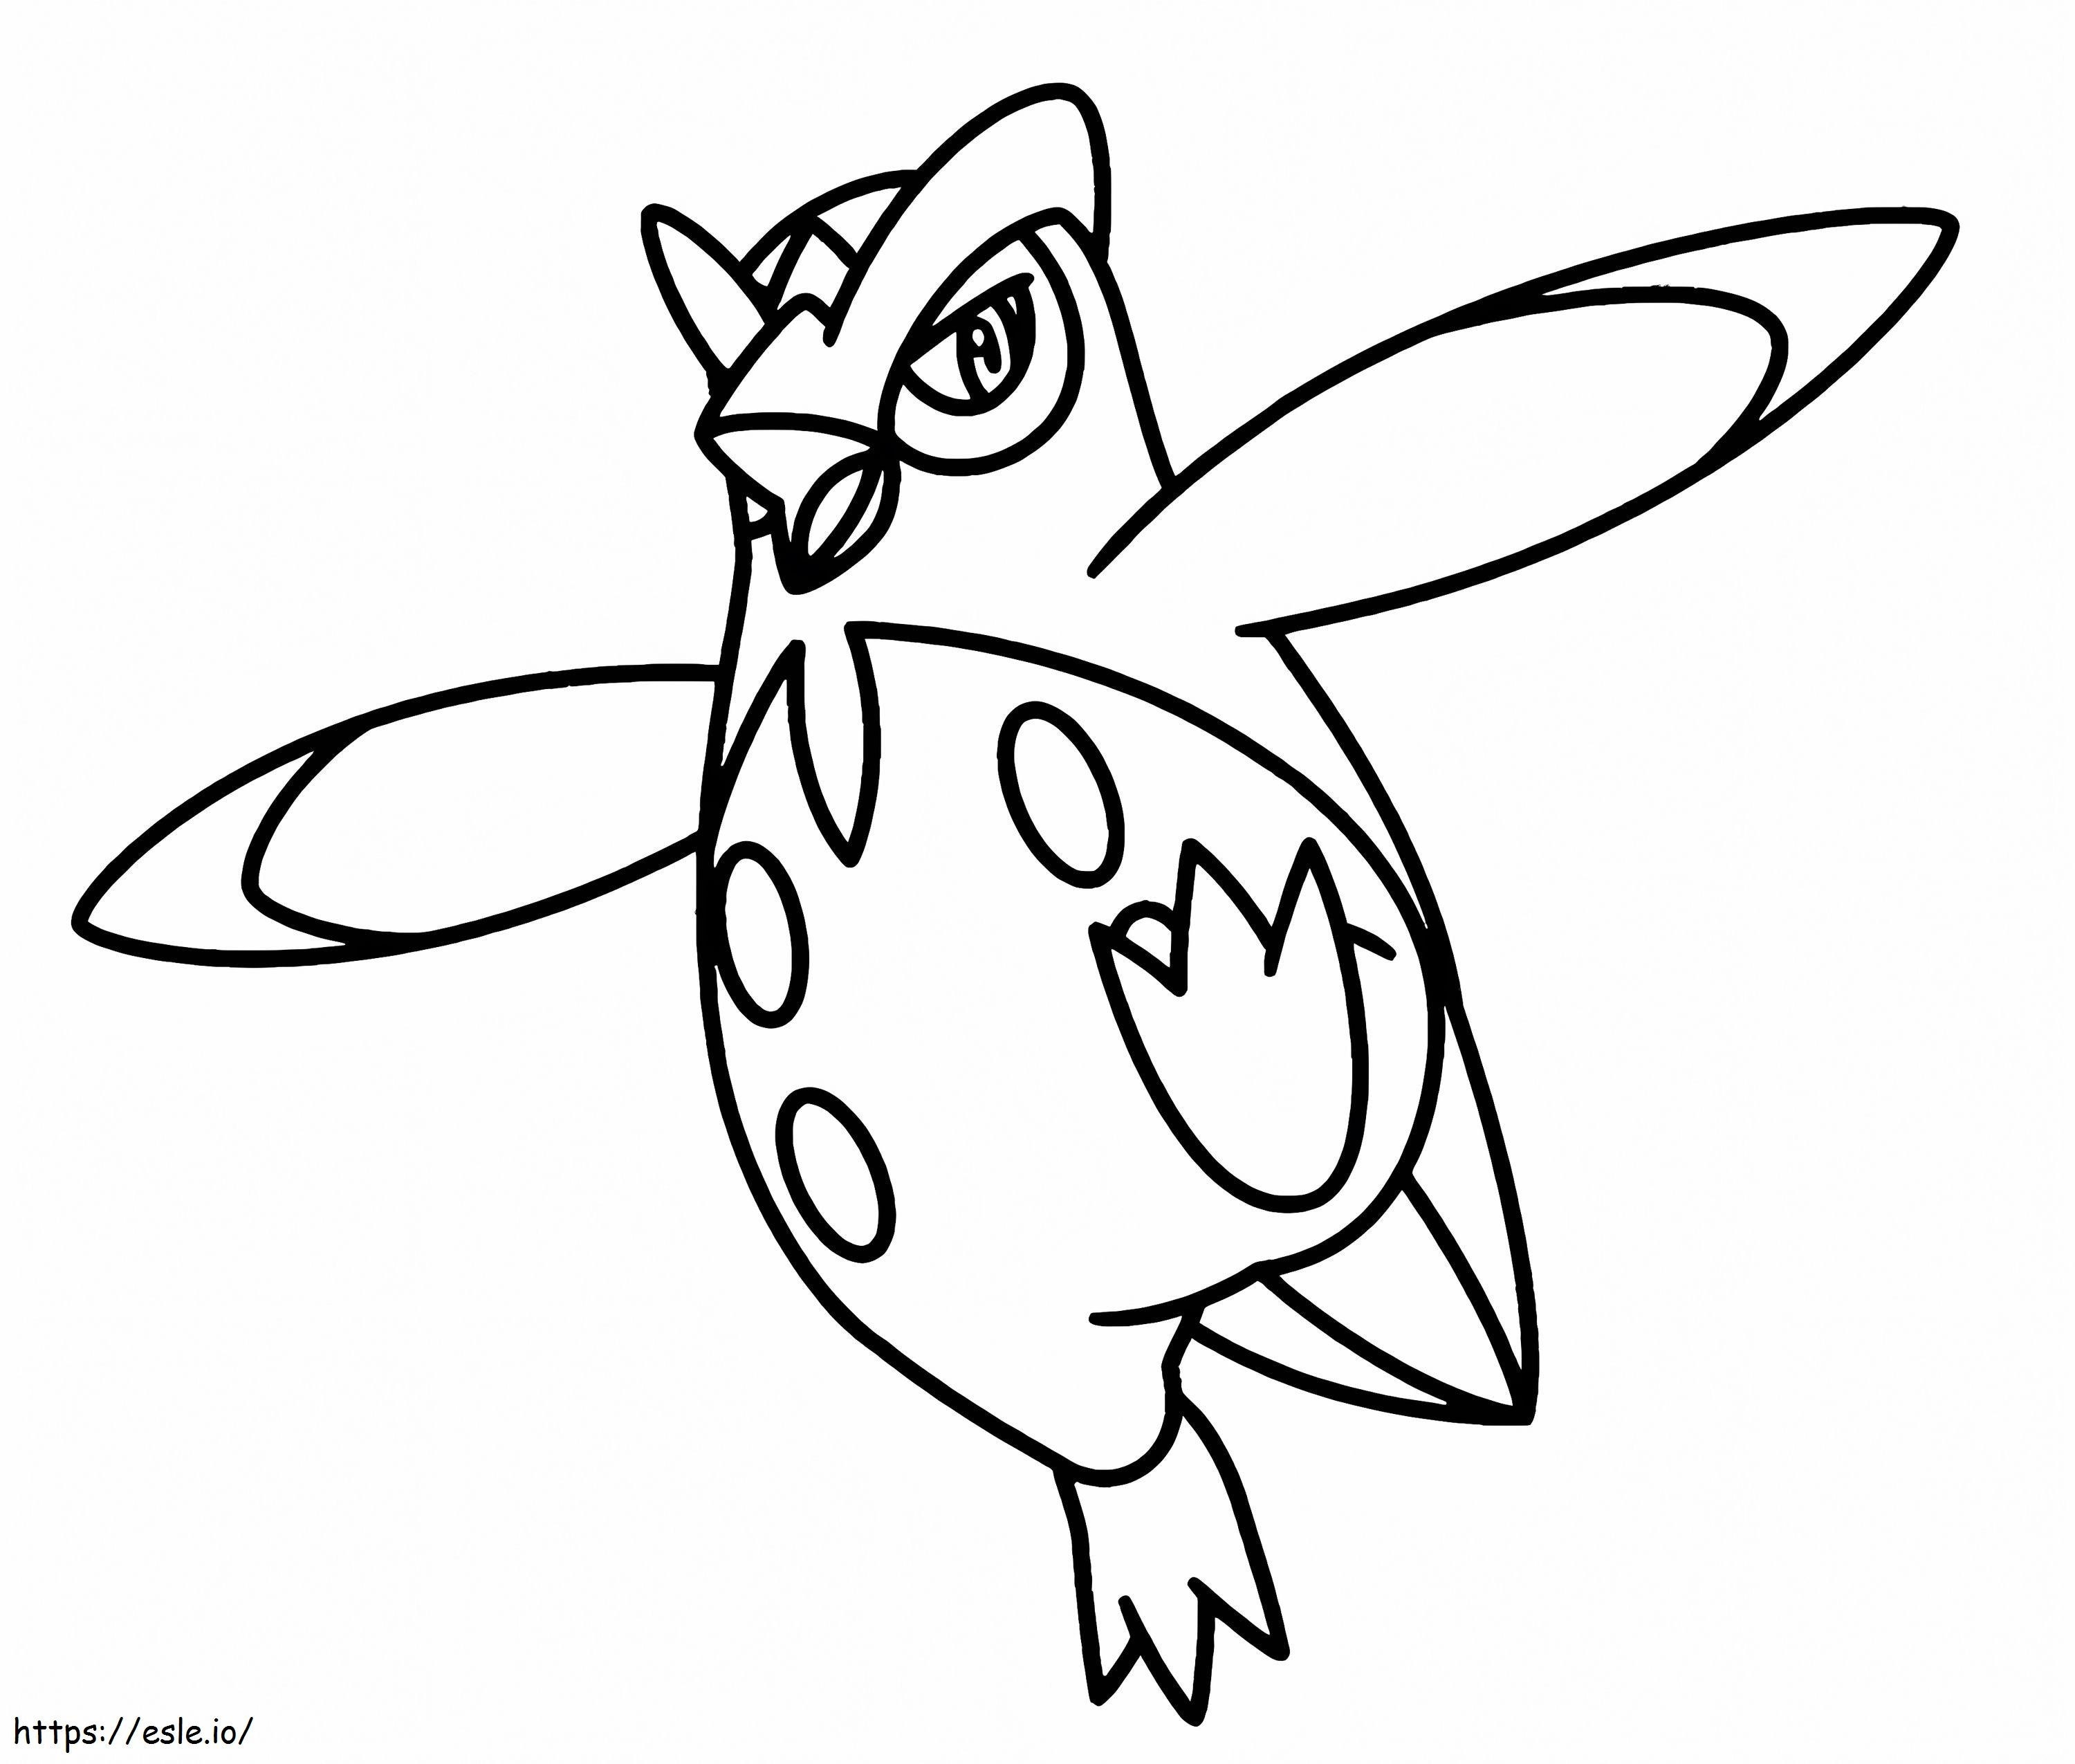 Coloriage Pokémon Prinplup Gen 3 à imprimer dessin